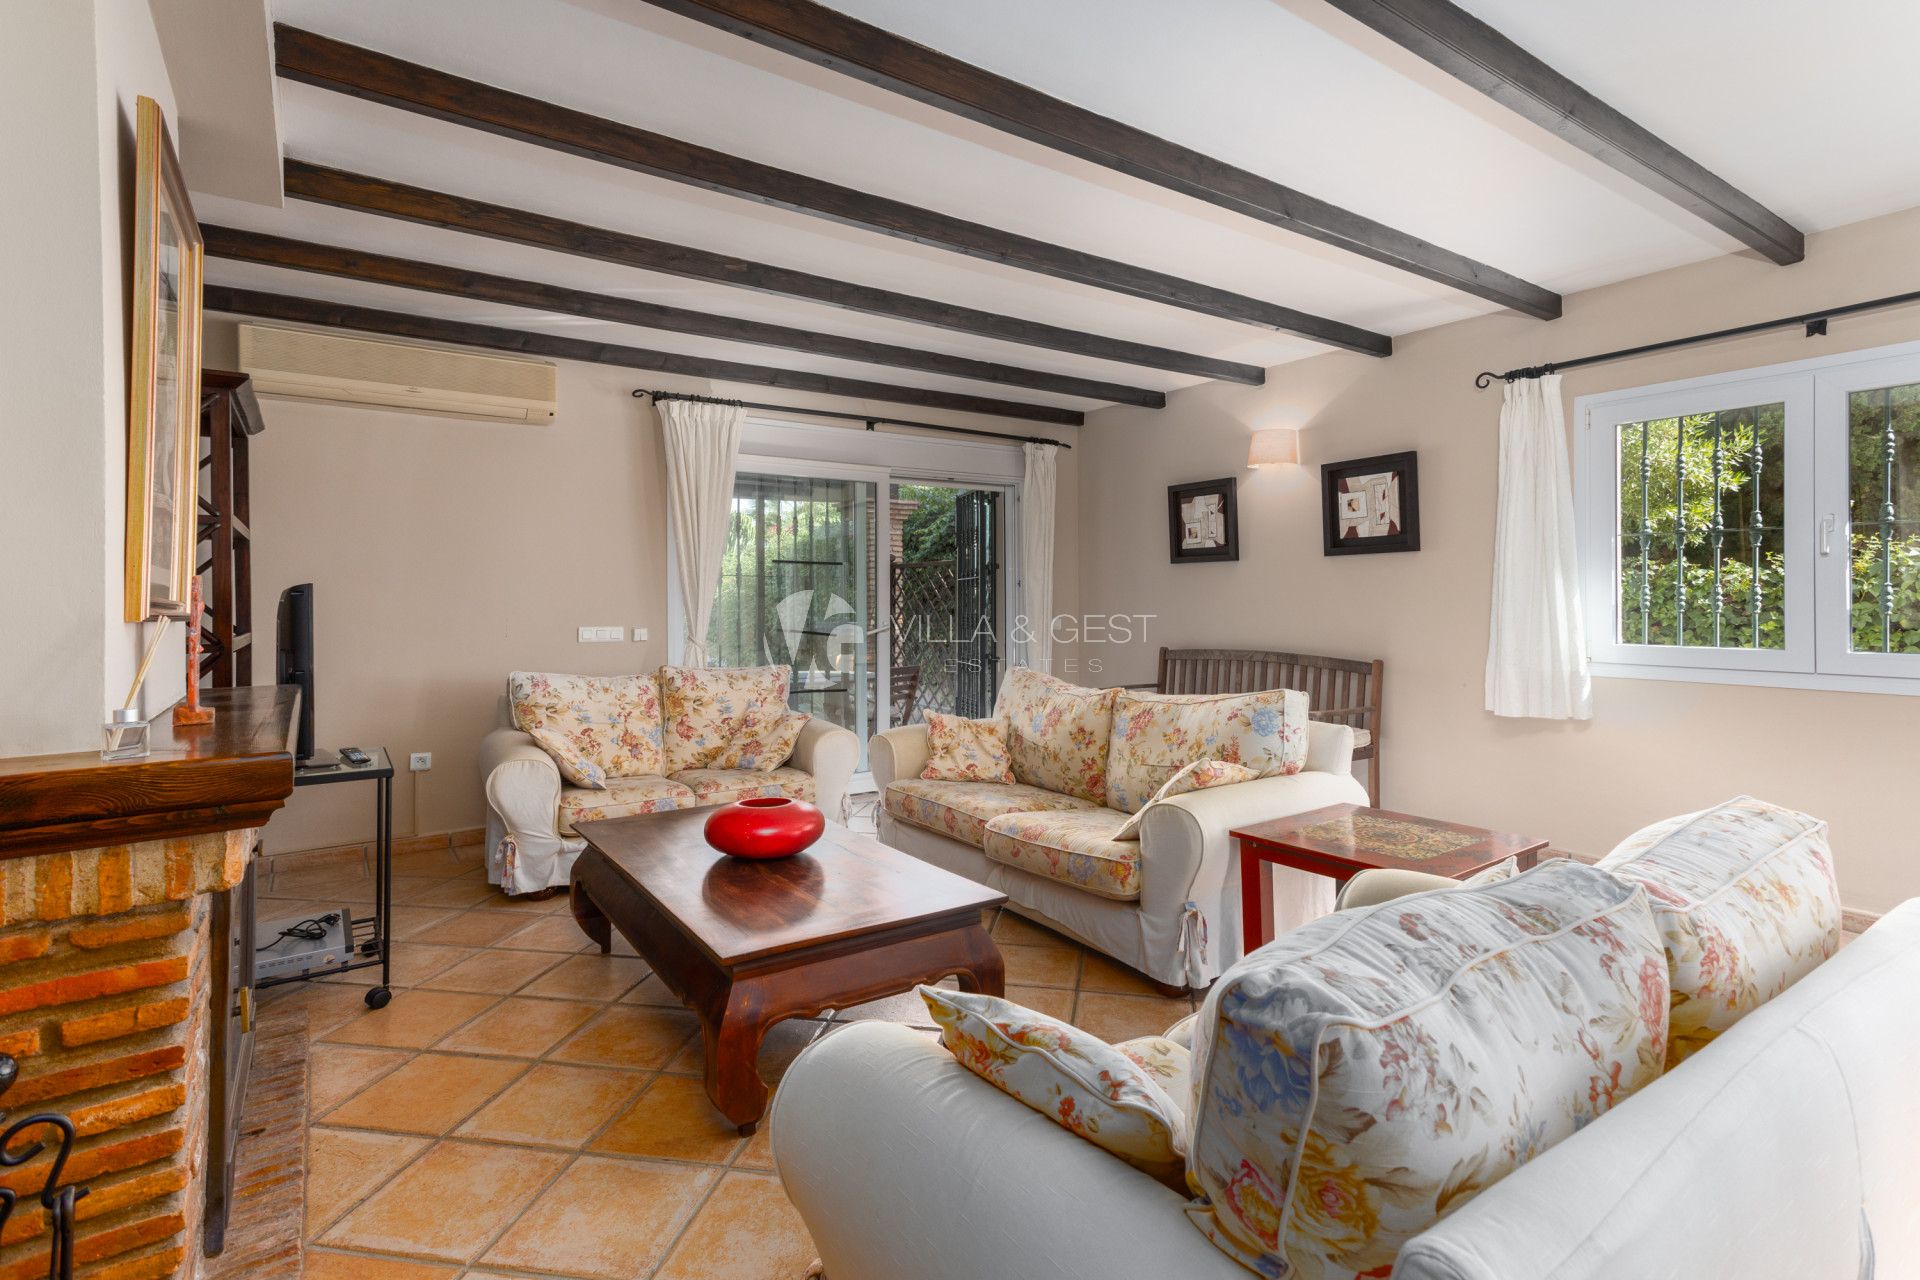 Semi Detached House for sale in Estepona, Costa del Sol